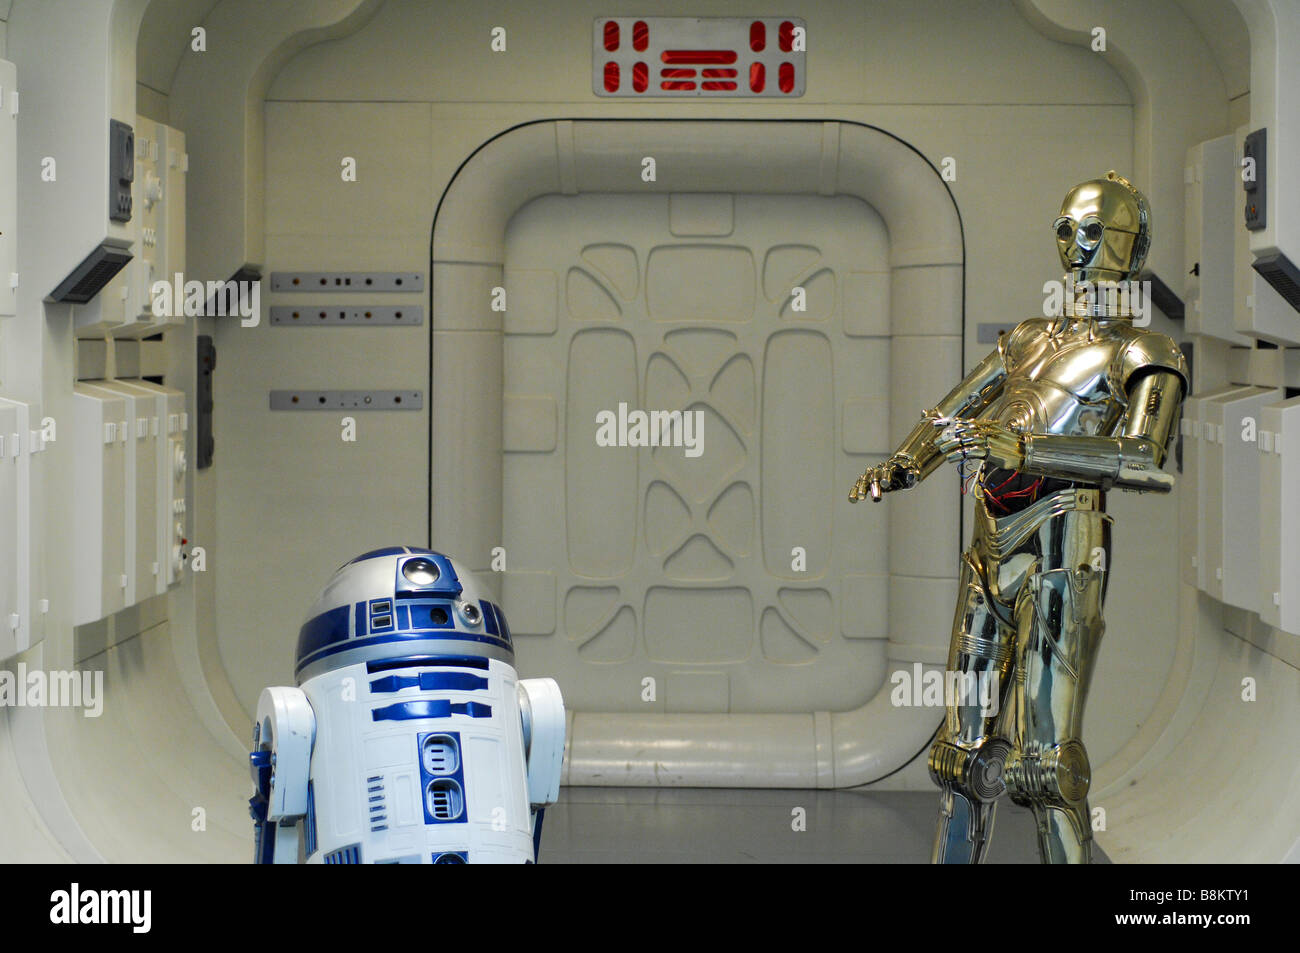 Personnages Star Wars C3PO et R2D2 sur une maquette d'un des ensembles au London's Southbank film ovieum "musée". Banque D'Images